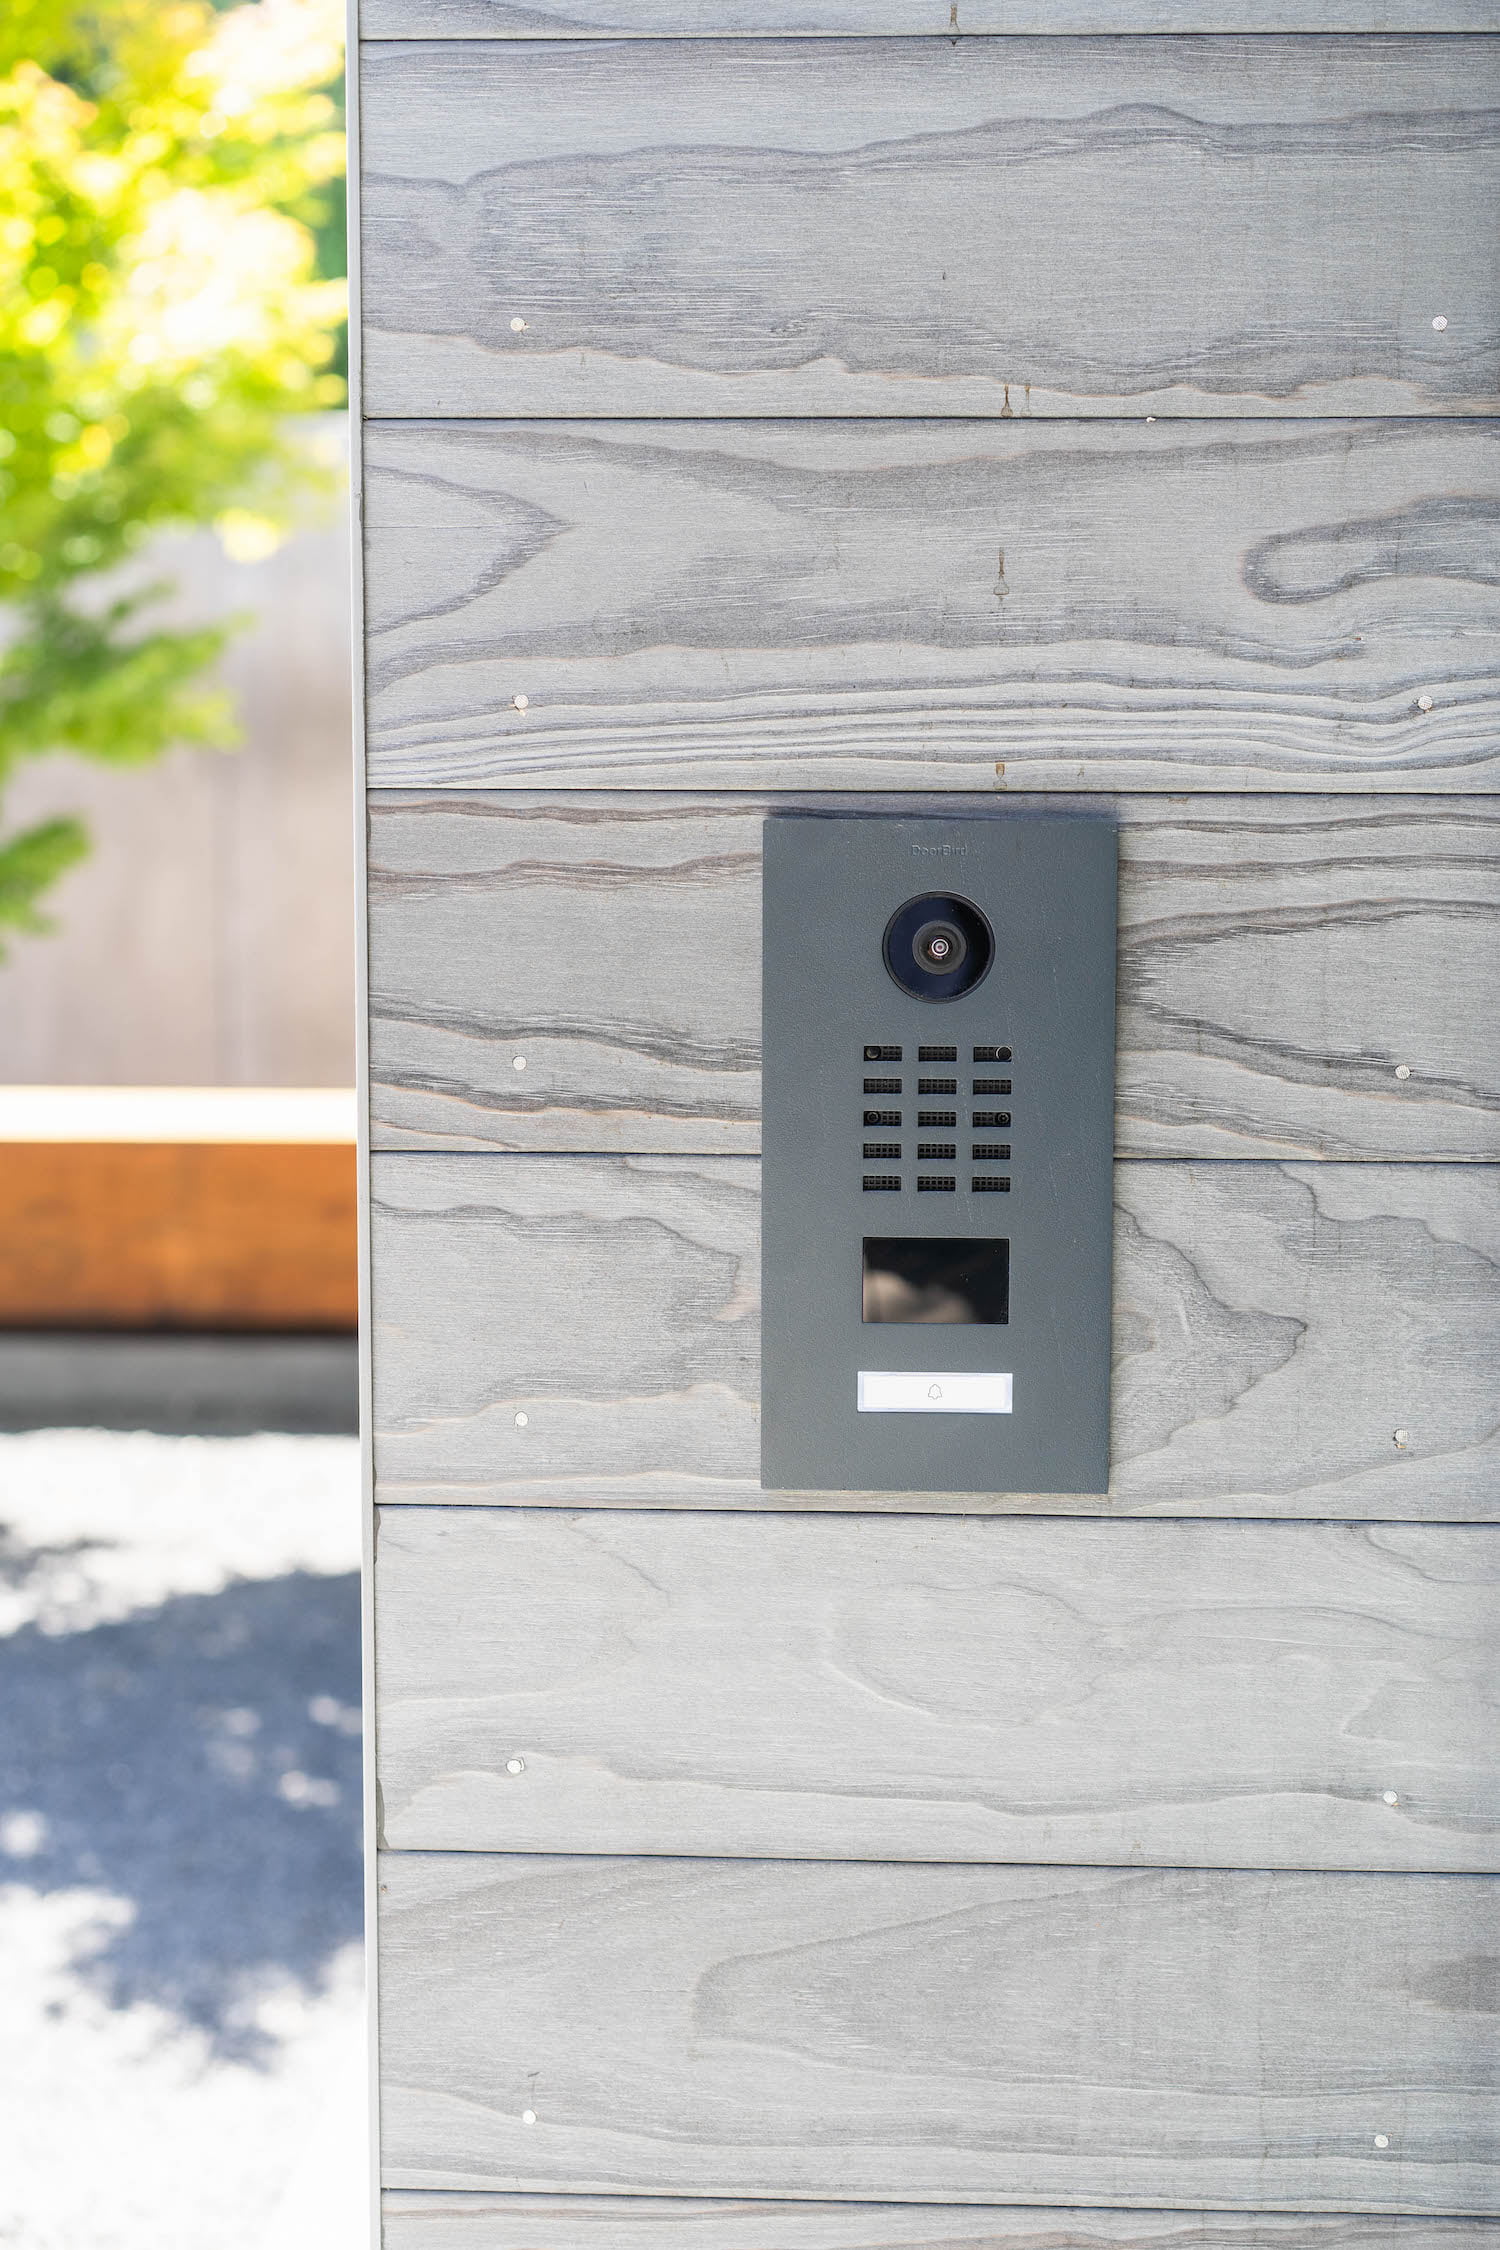 Doorbird intercom/smart doorbell mounted on the side of a home